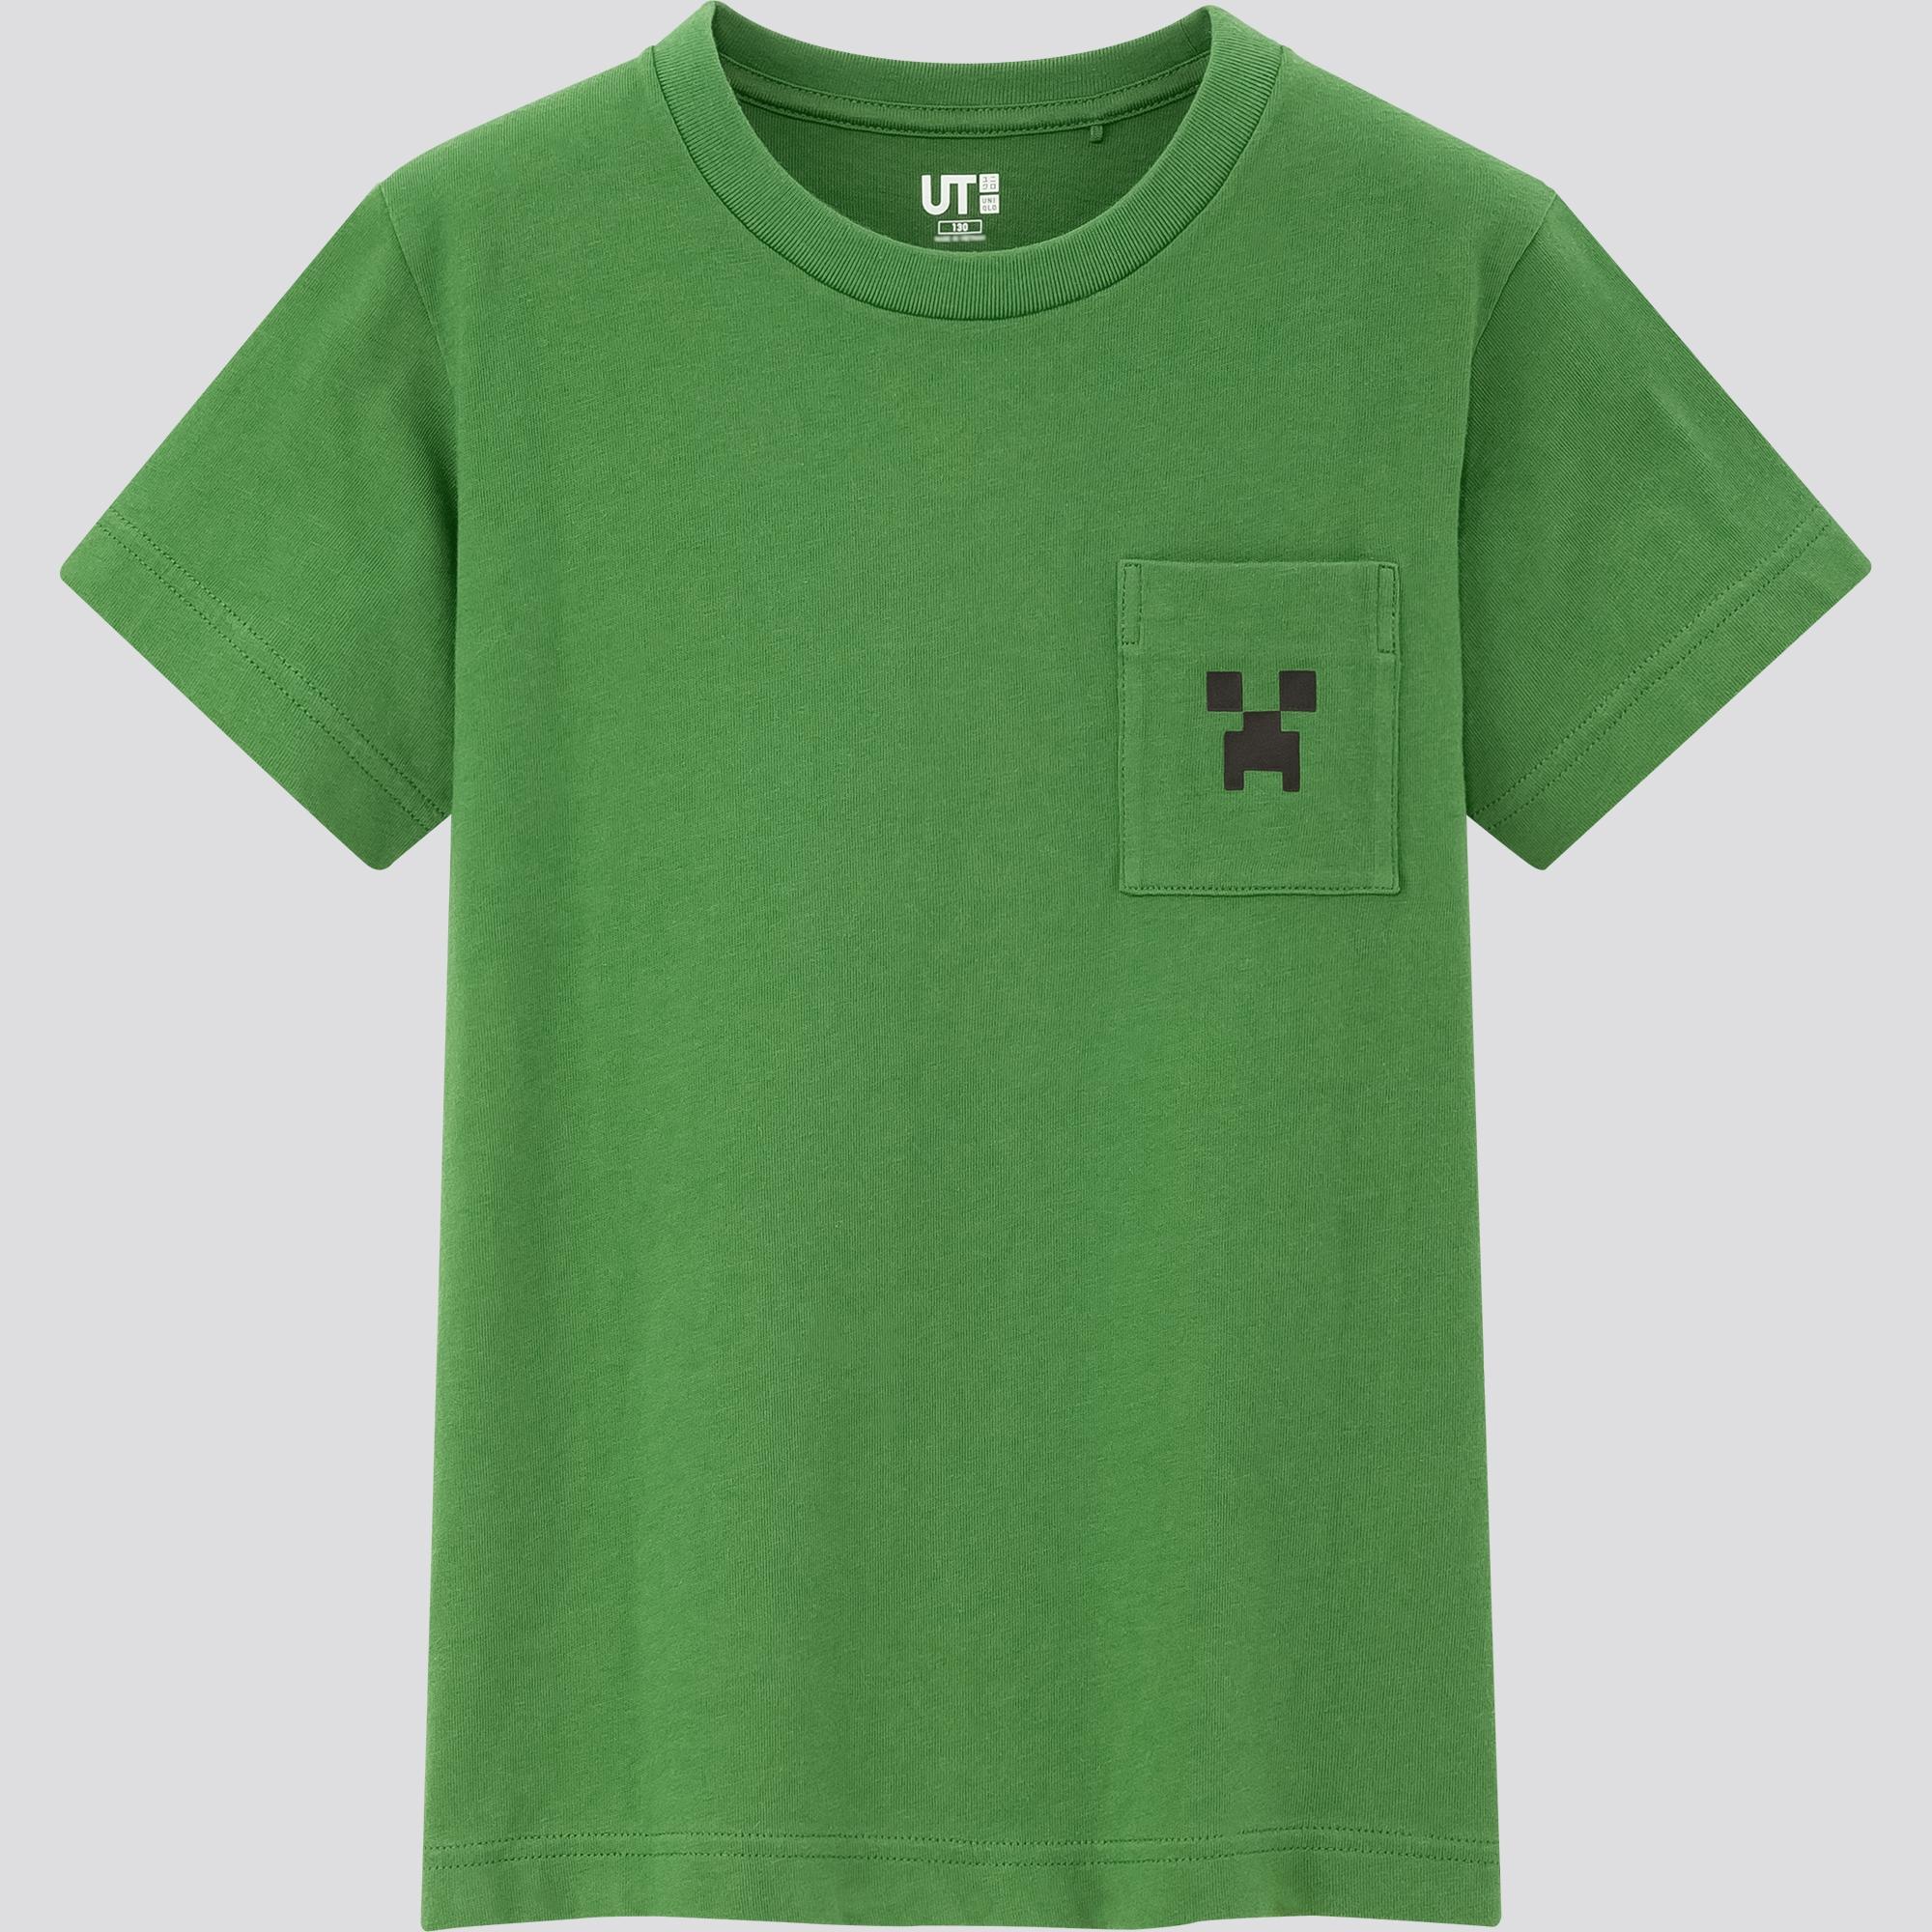 《Minecraft》 X UNIQLO 合作登場 限定T恤勁搶眼 - 香港手機遊戲網 GameApps.hk